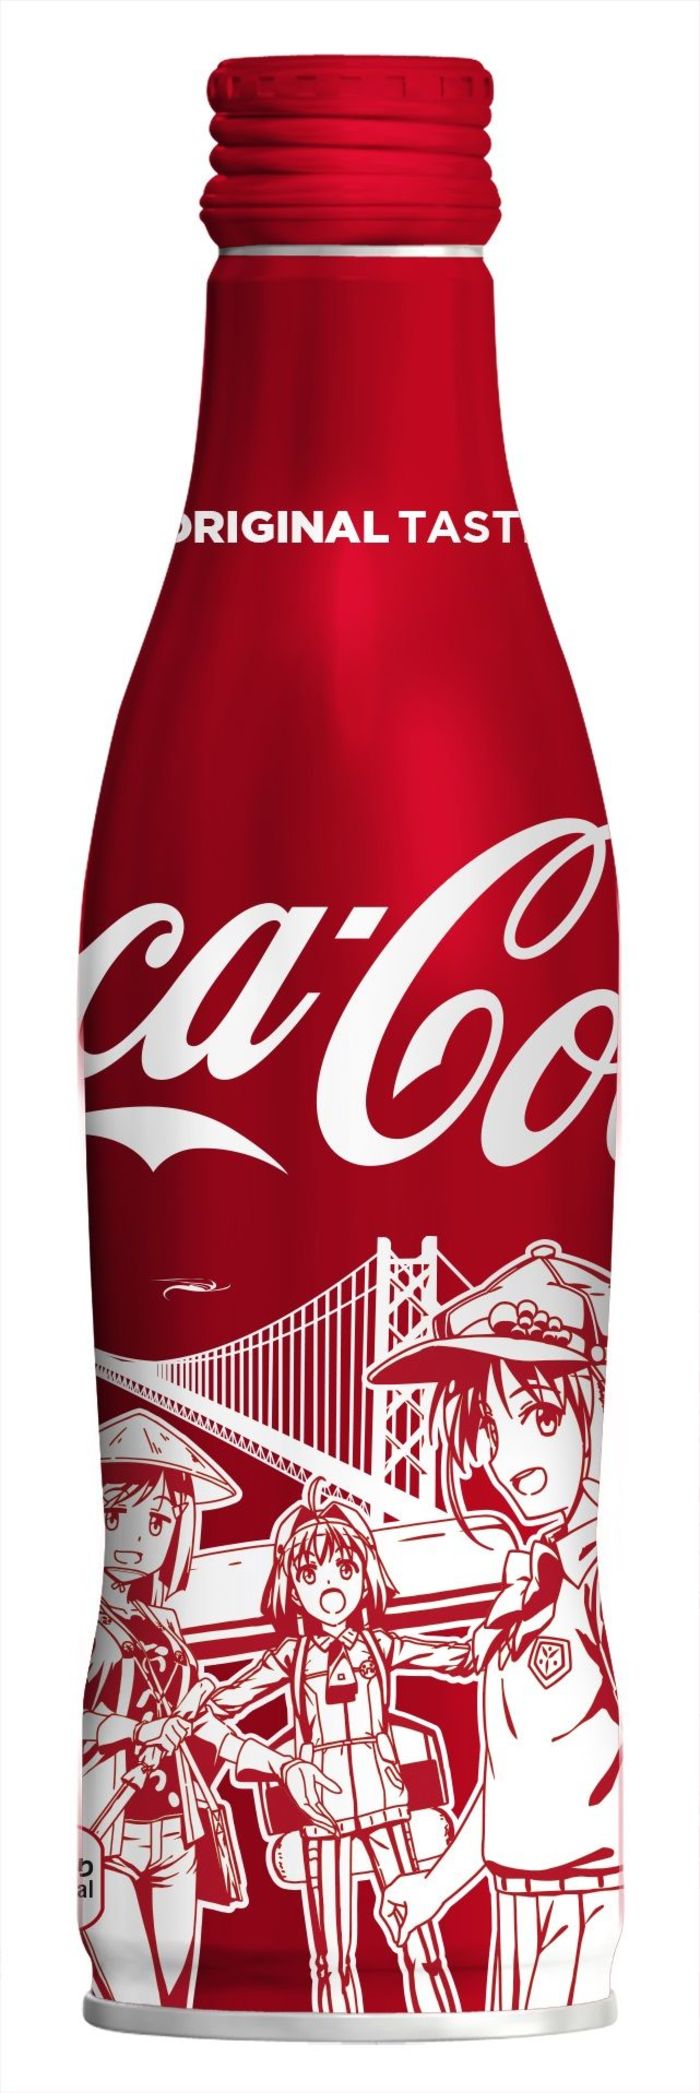 四国限定 おへんろ ボトルを発売 コカ コーラ 4日から 徳島ニュース 徳島新聞電子版